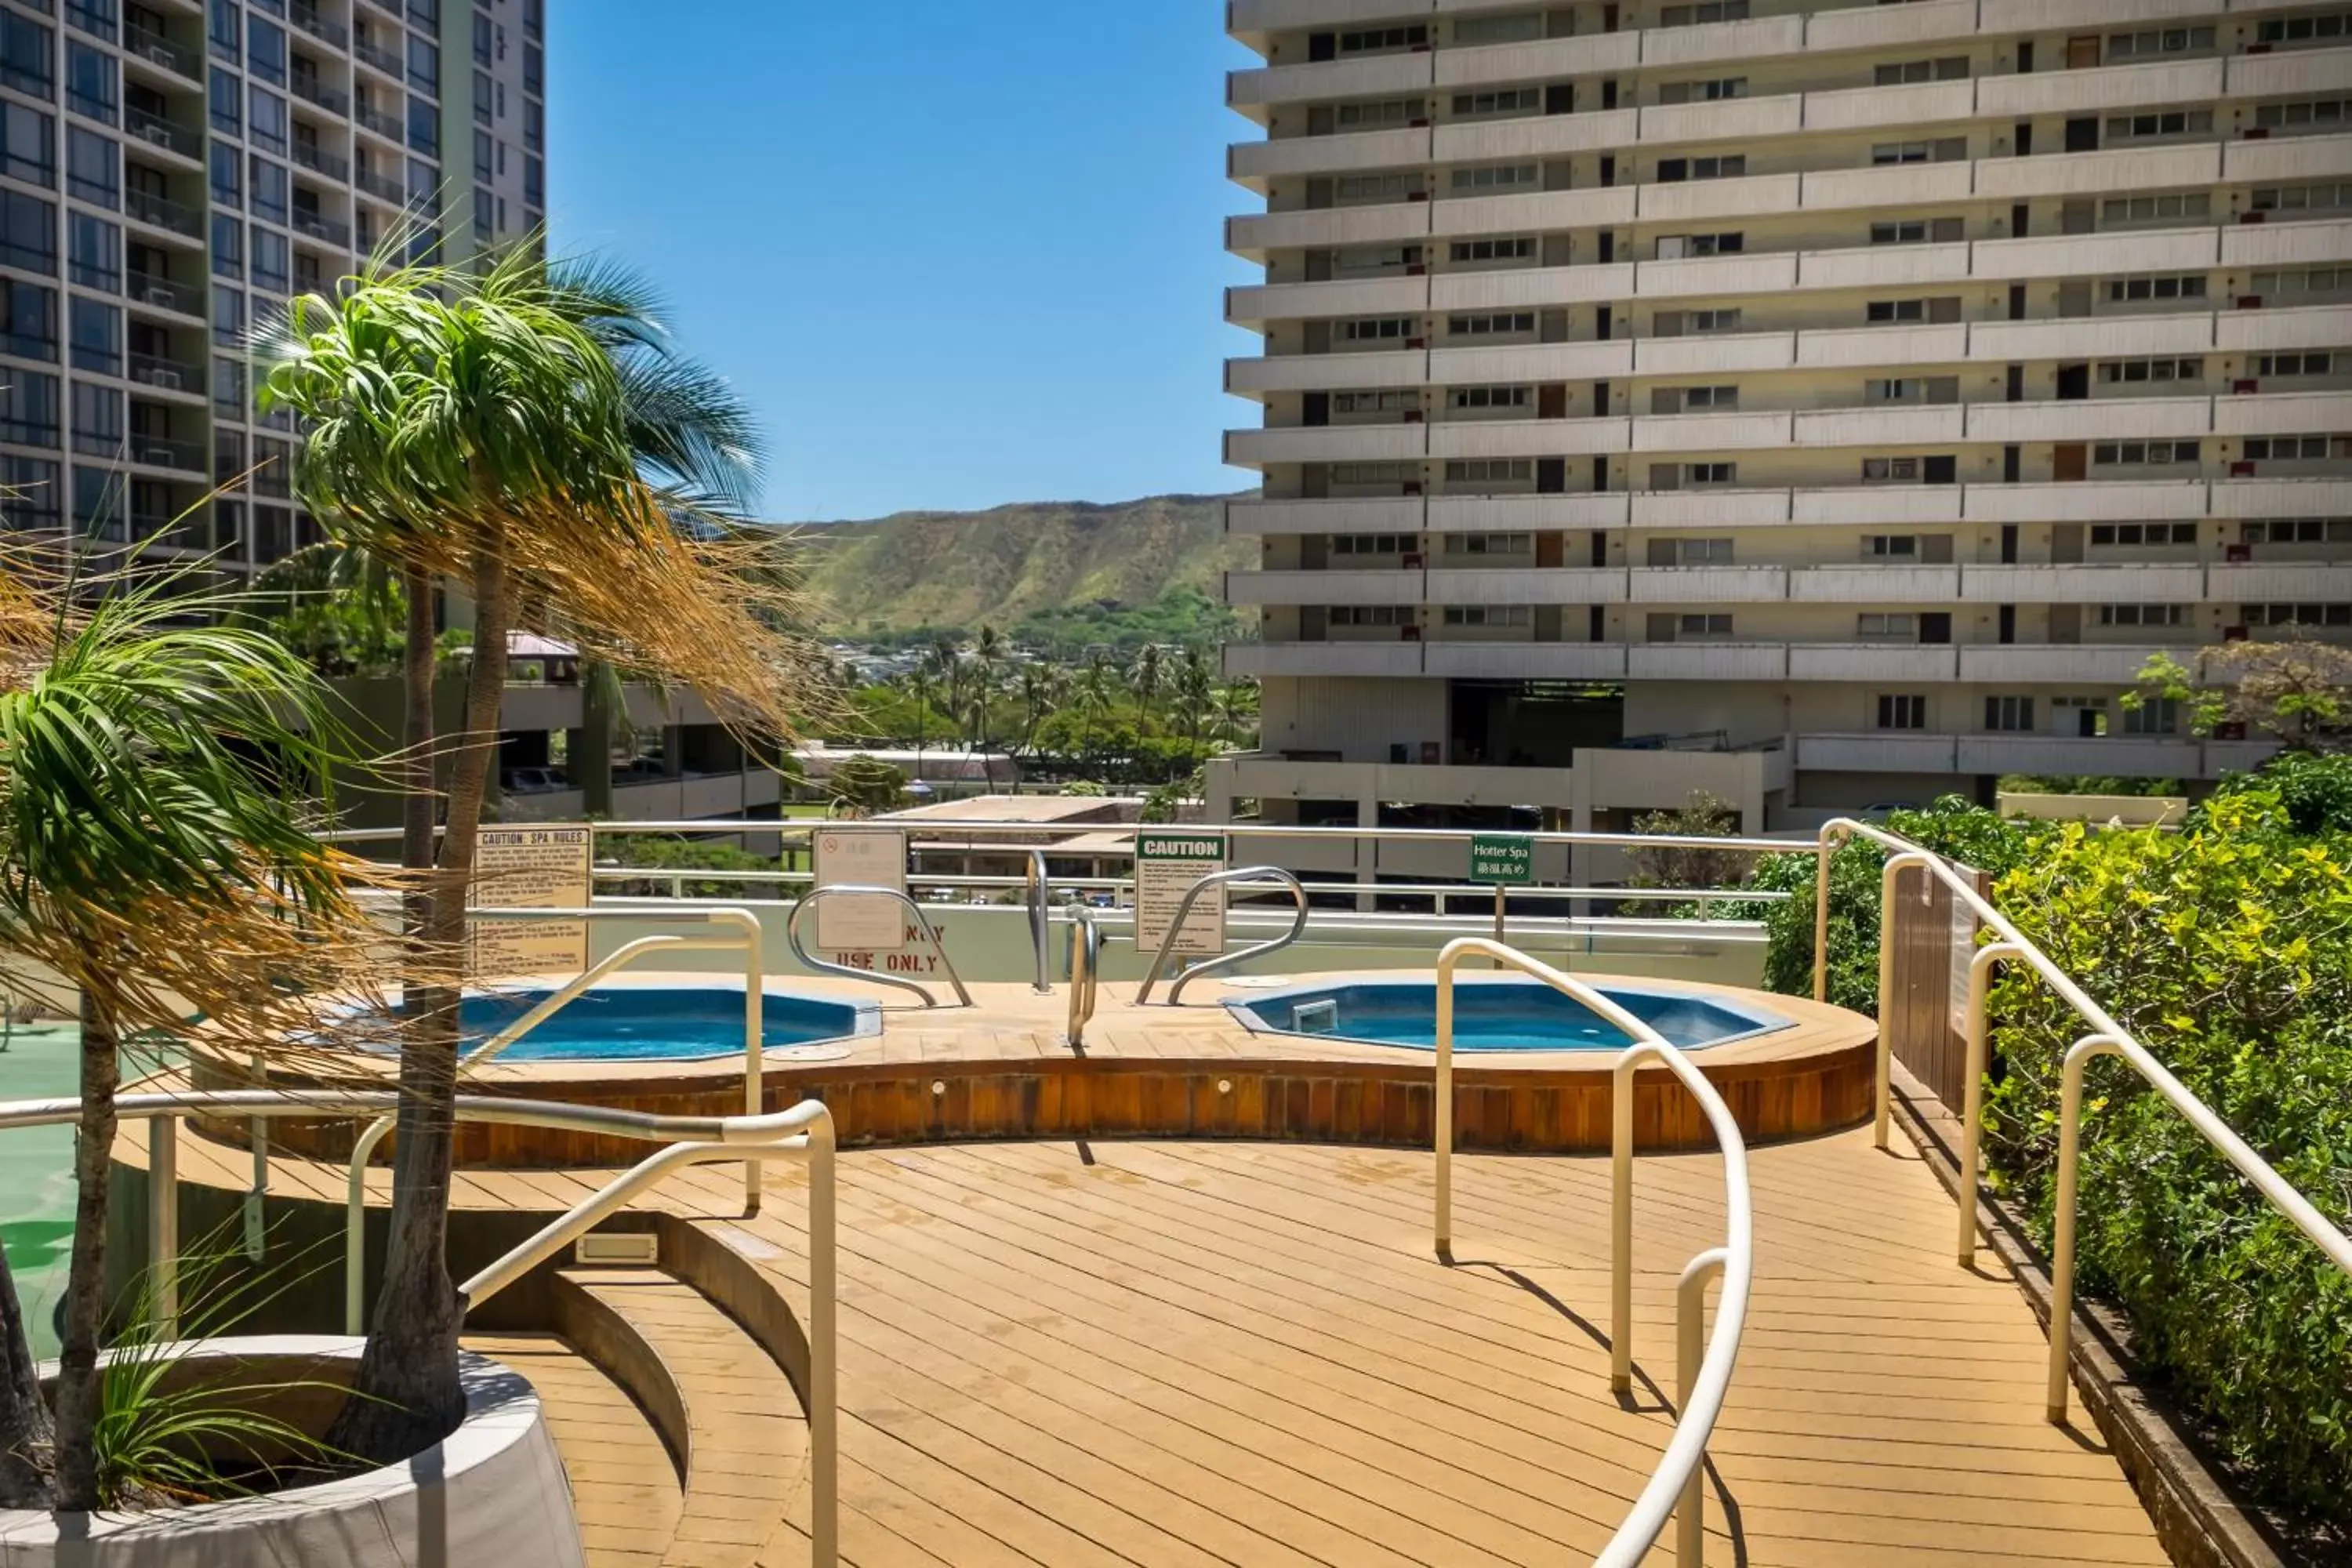 Hot Tub, Swimming Pool in Hawaiian Sun Holidays